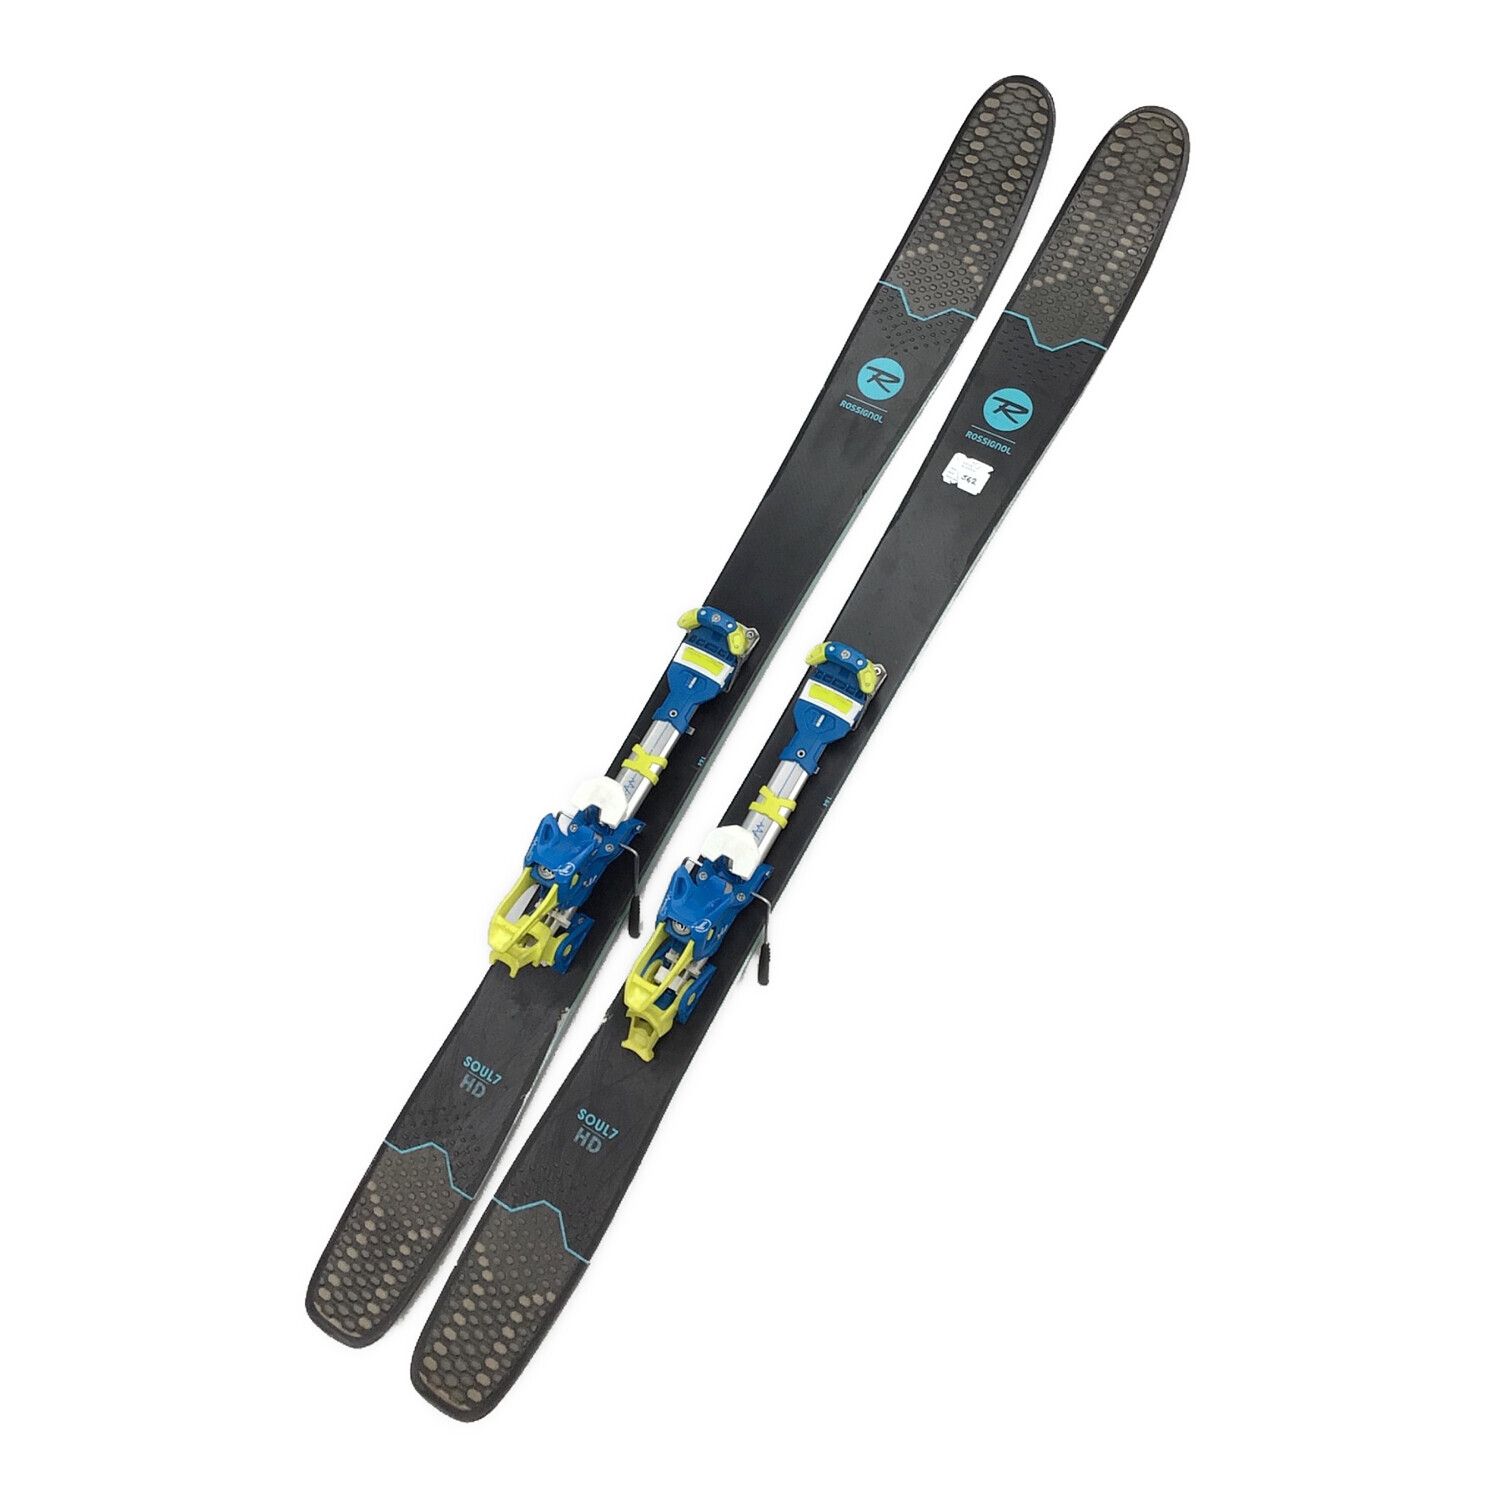 ロシニョール SOUL7 188cm スキー板 + チロリア Attack13引き続き検討いたします